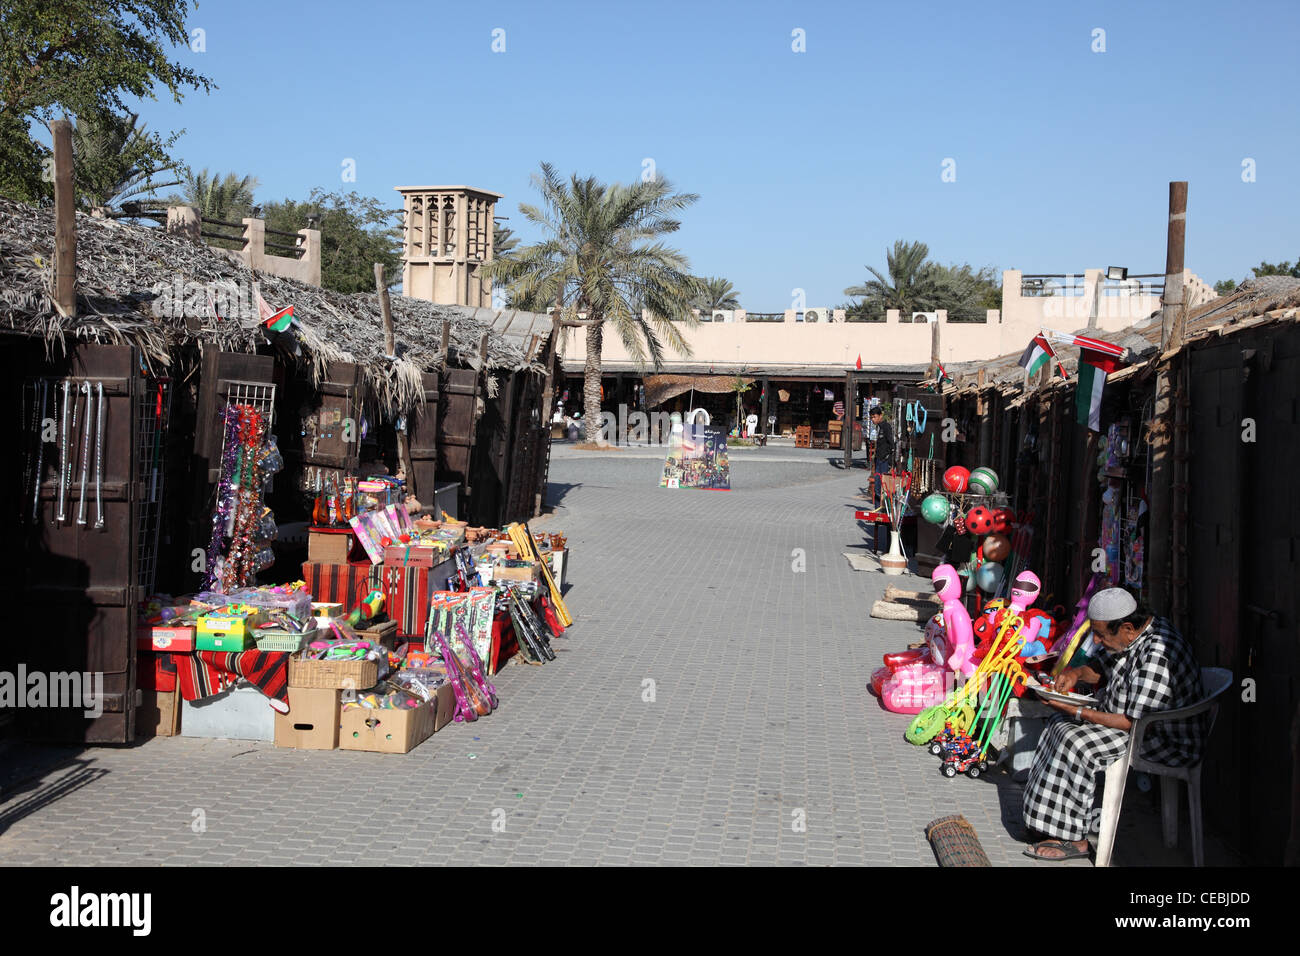 Souq in The Dubai Heritage Village Foto Stock